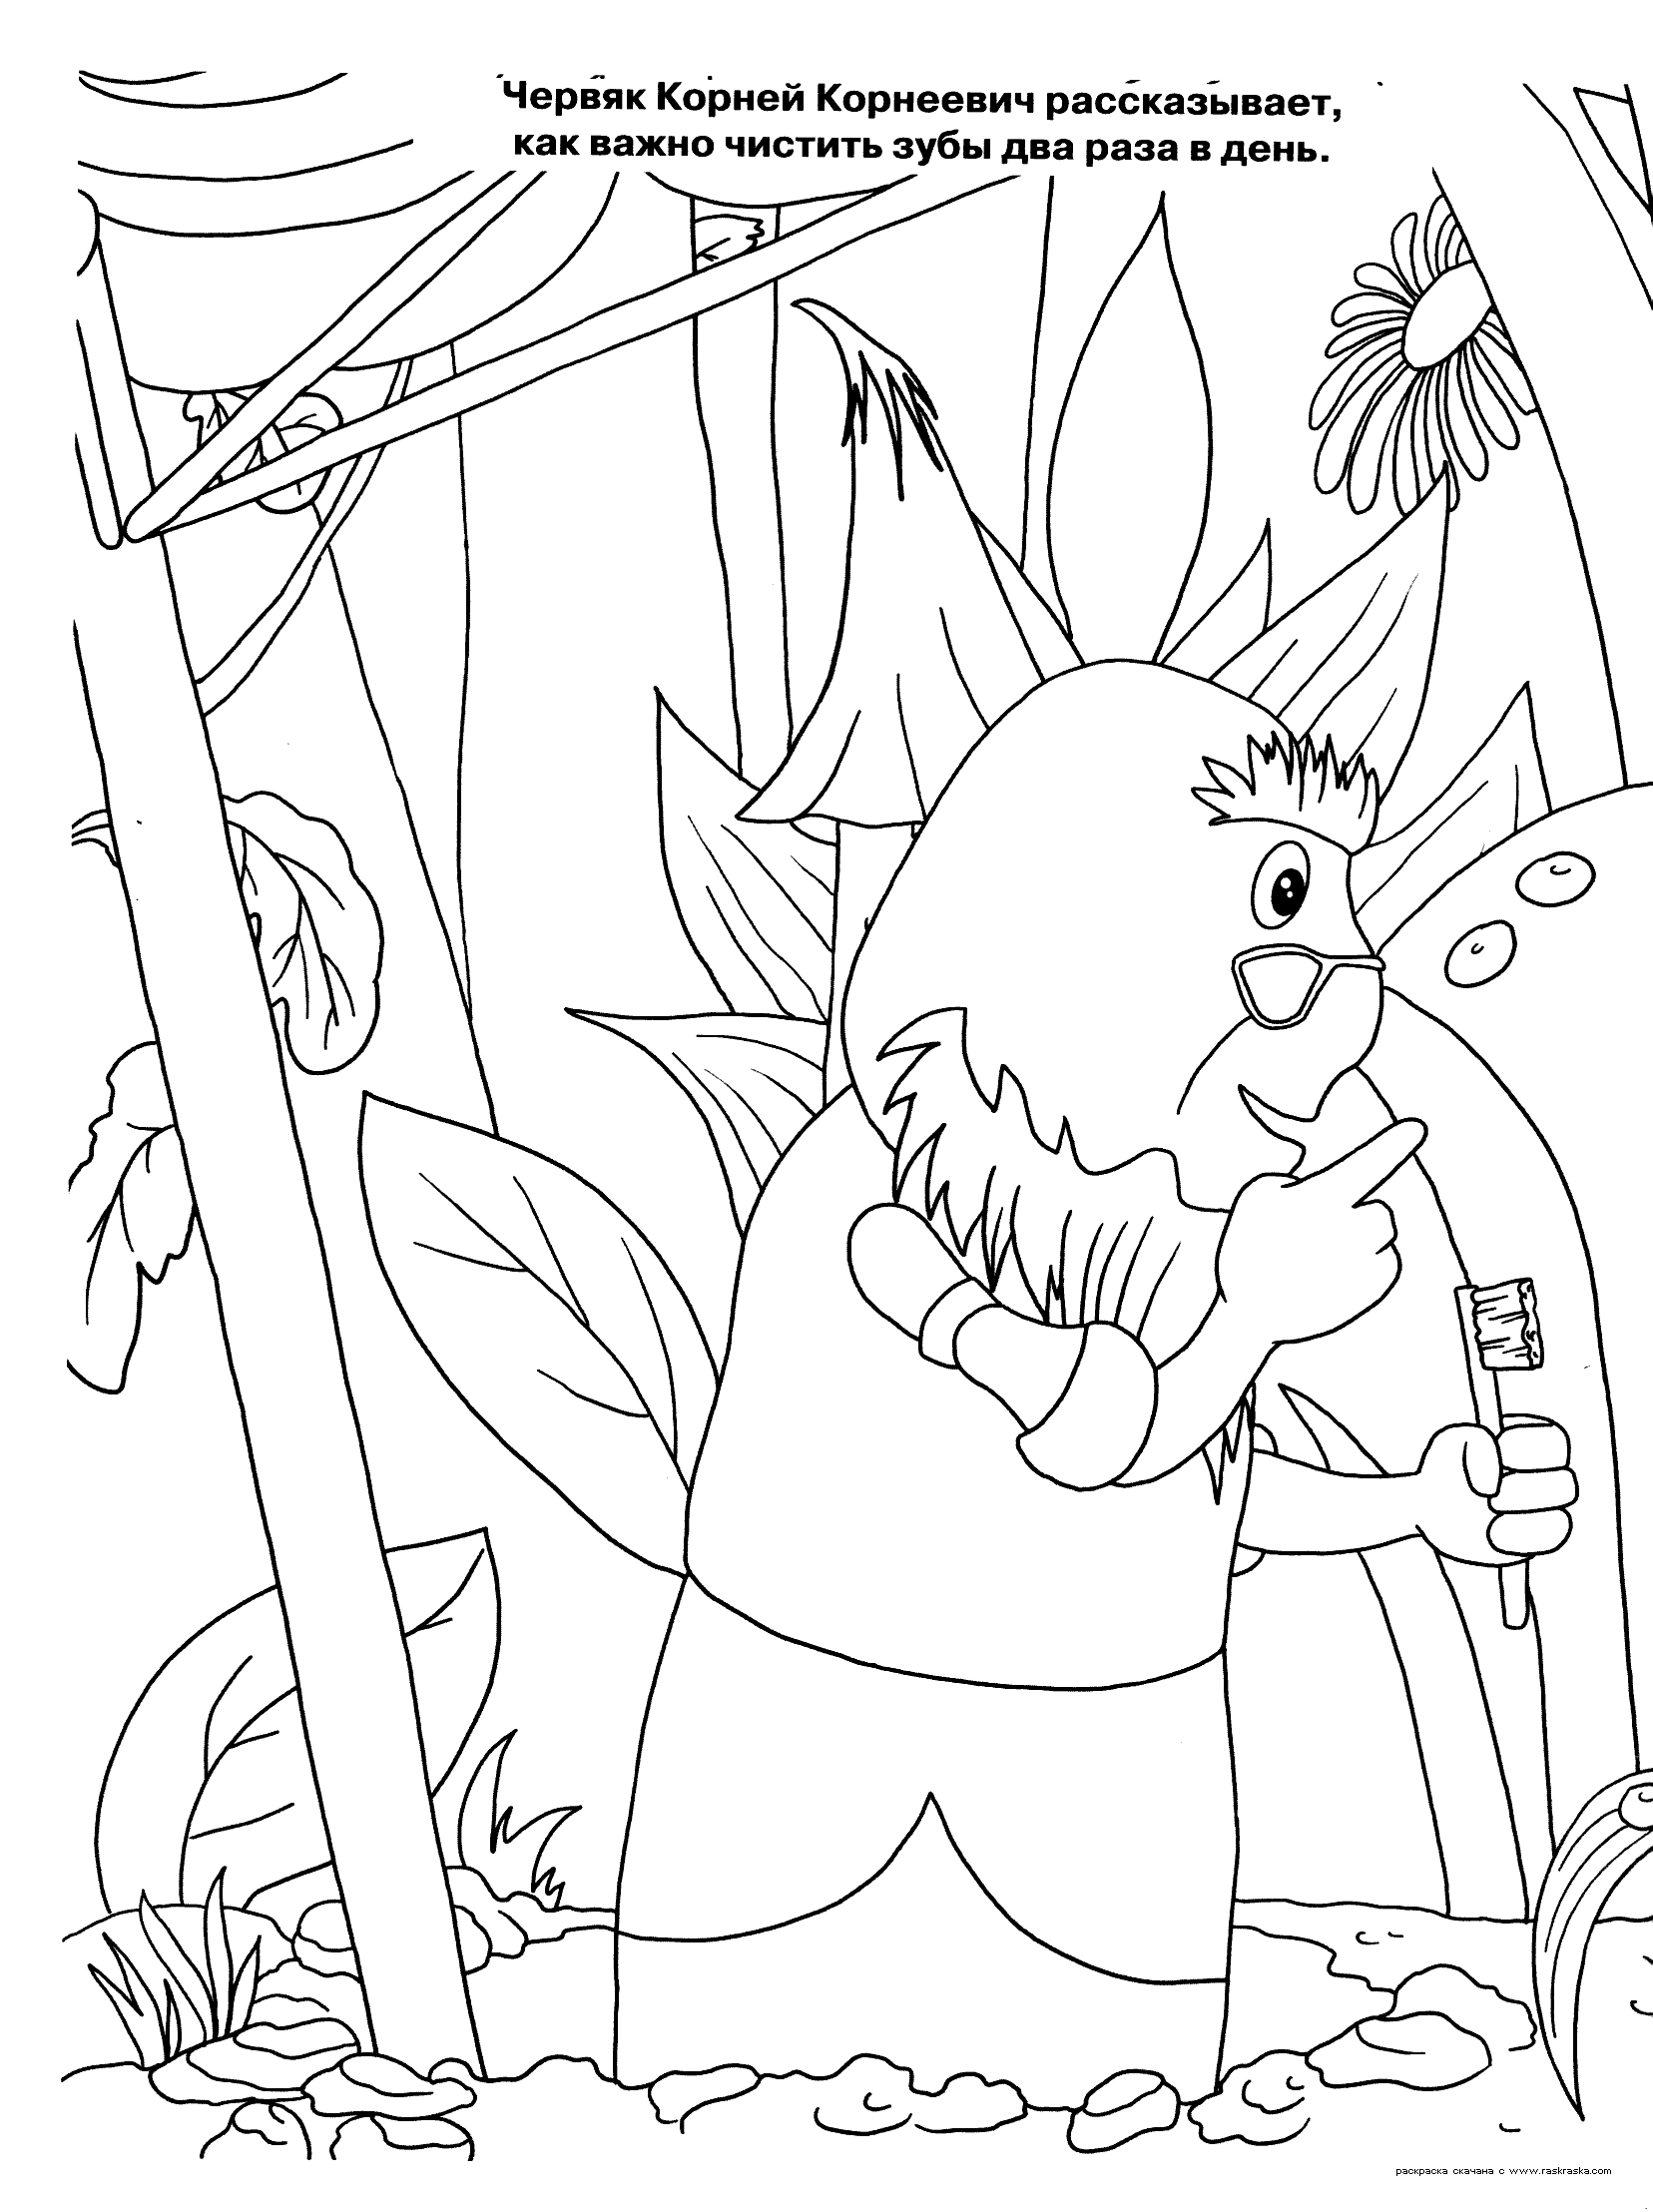 Раскраска корней корнеевич. раскраска червяк корней корнеевич объясняет лунтику, миле и кузе откуда на траве появляется роса, картинки из мультфильма про лунтика для раскрашивания детьми 